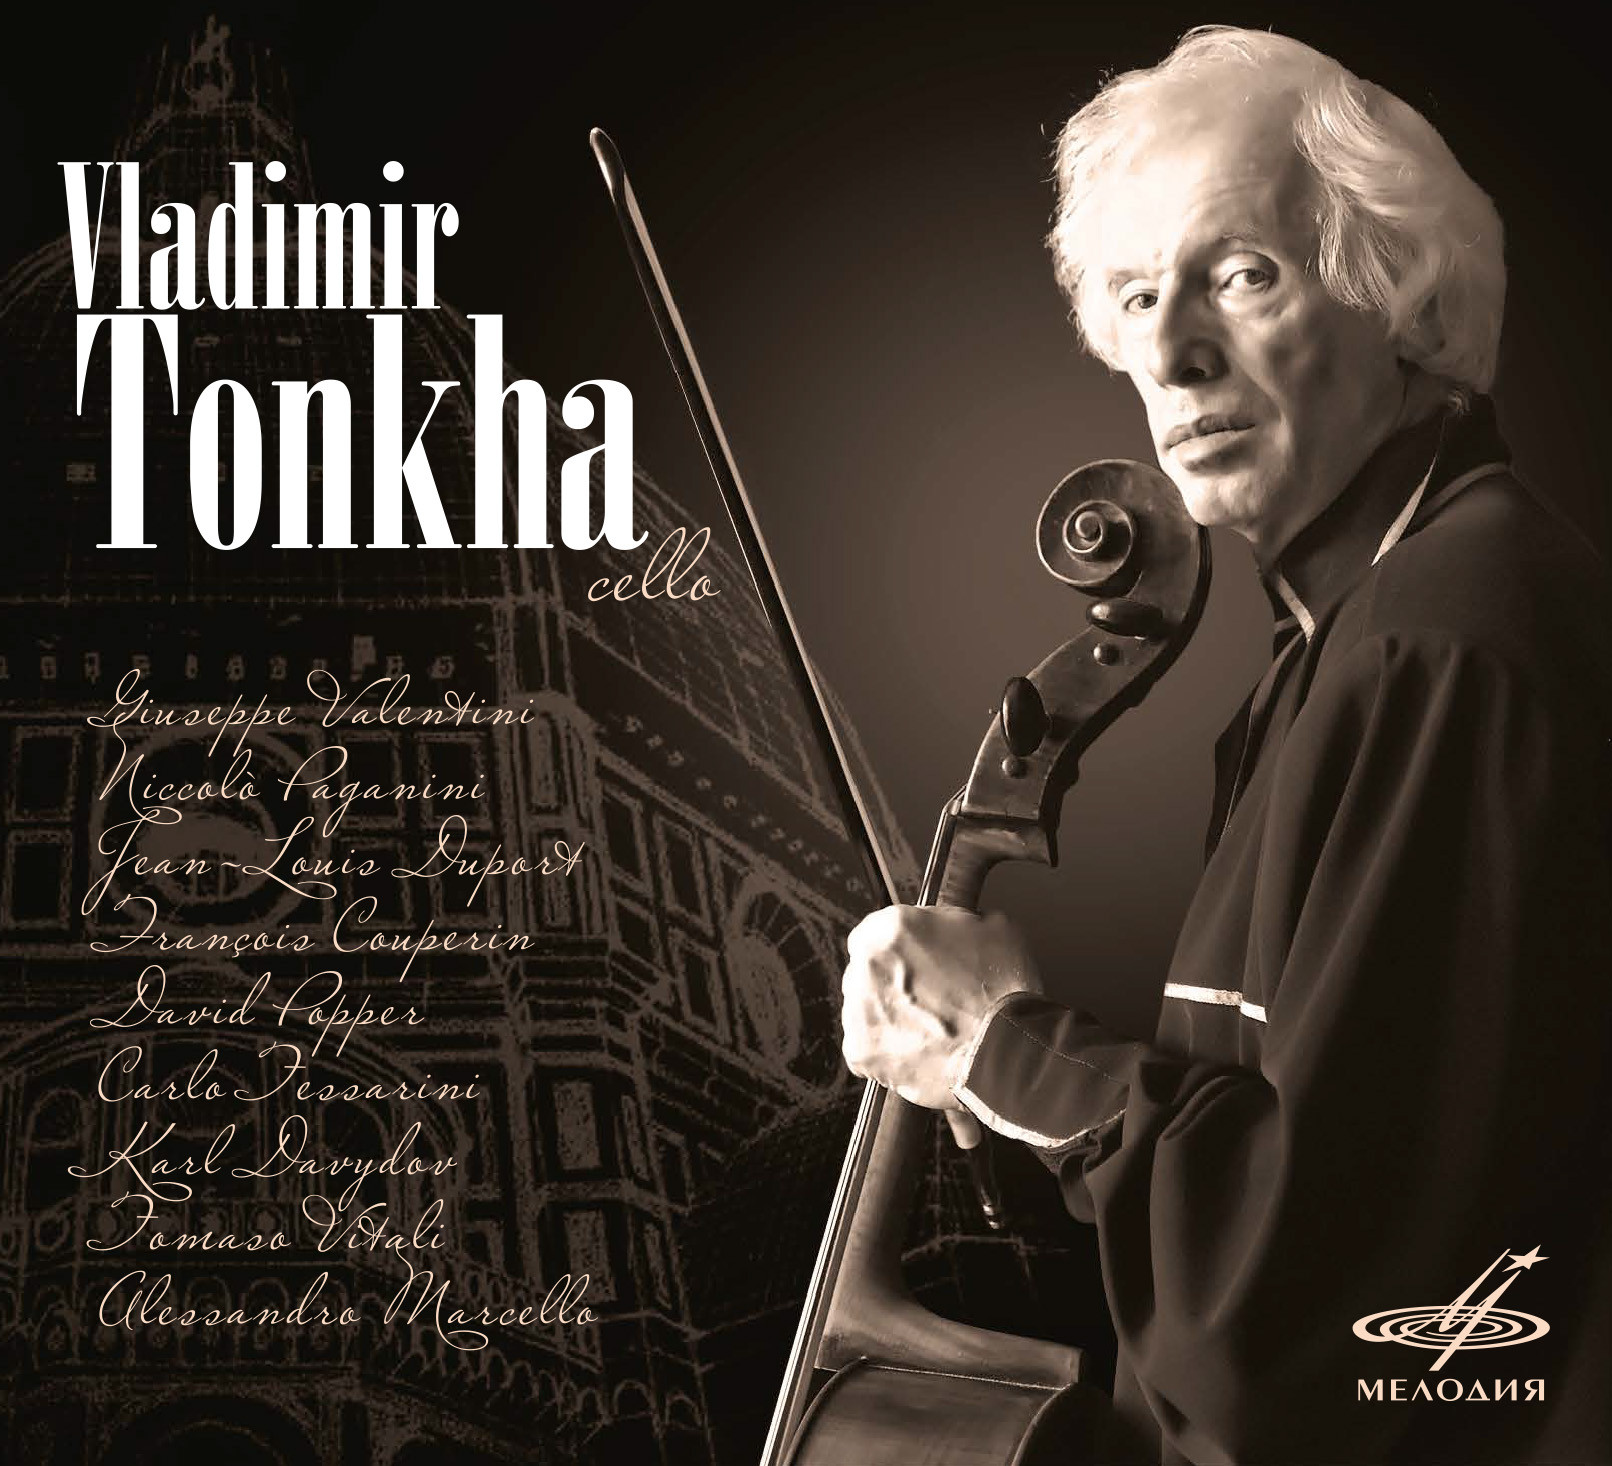 Владимир Тонха, виолончель